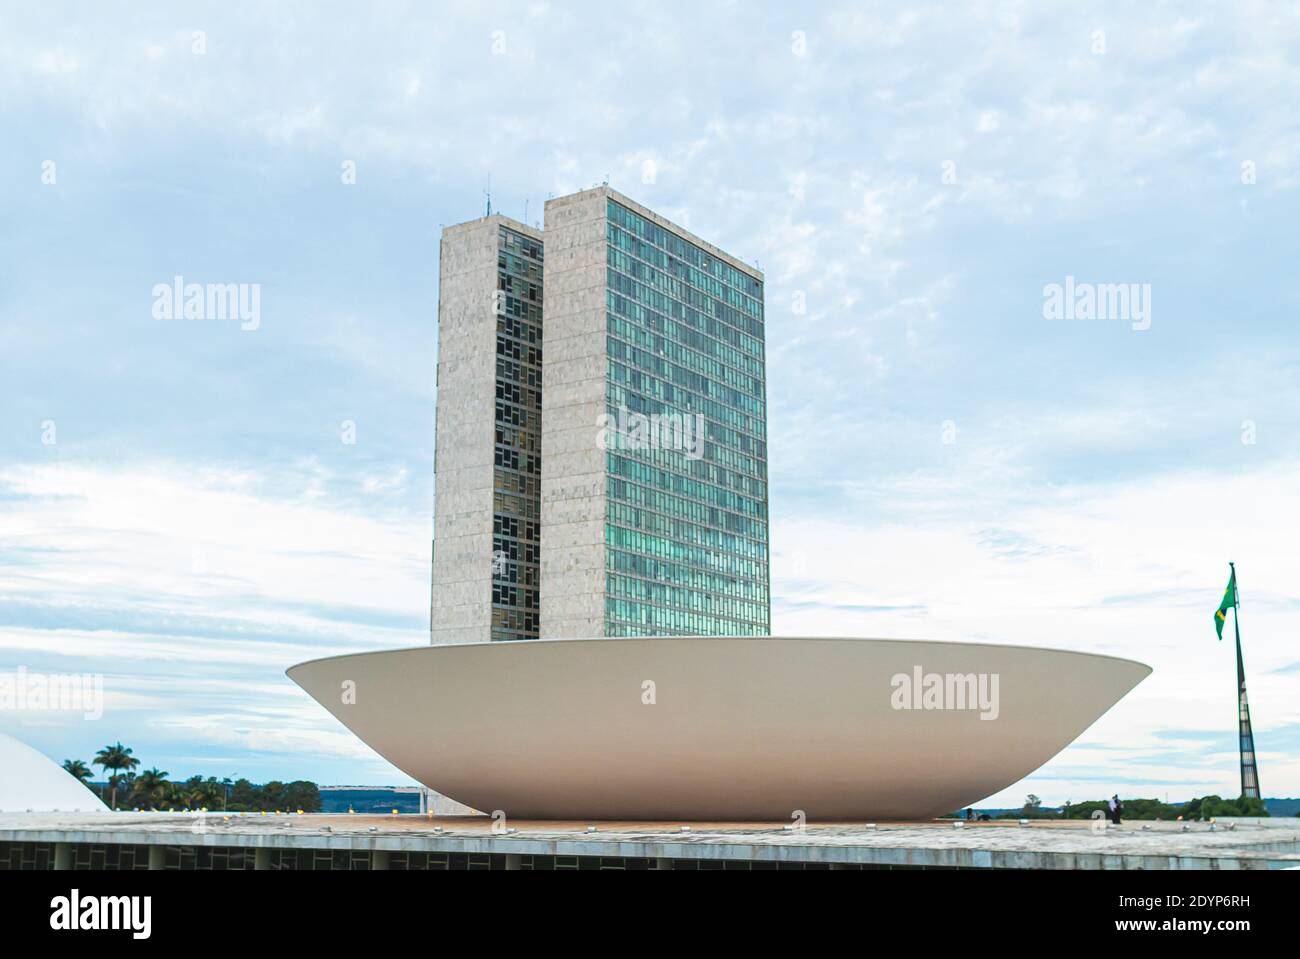 Il Congresso Nazionale del Brasile ( Congresso Nacional do Brasil - Parlamento brasileiro). Edificio progettato da Oscar niemeyer. Foto Stock